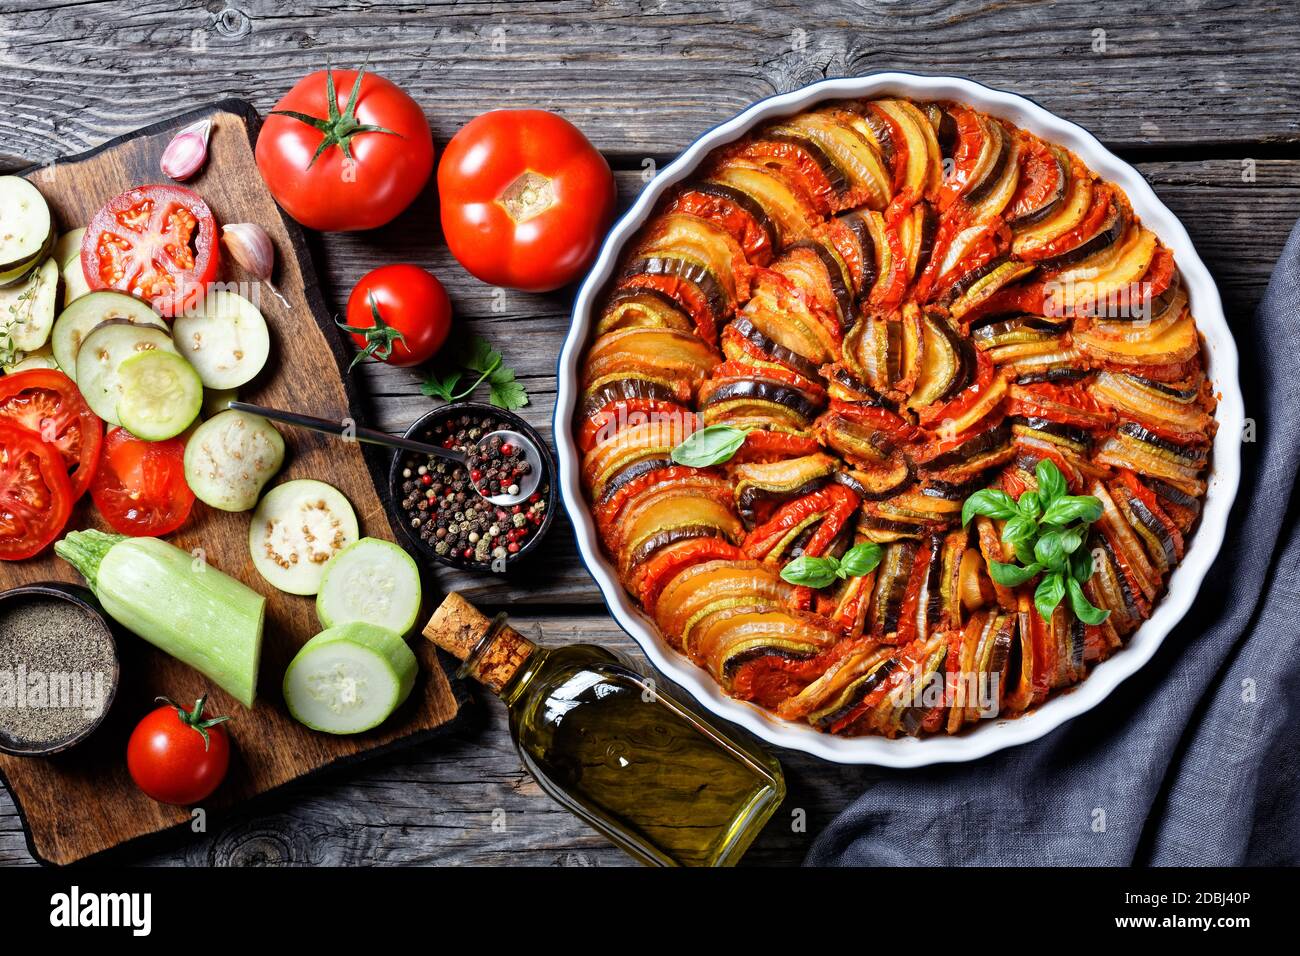 ratatouille, ragoût de légumes en tranches d'aubergines, courgettes, oignons et pommes de terre avec sauce tomate, ingrédients à l'arrière-plan, cuisine française, horizonta Banque D'Images